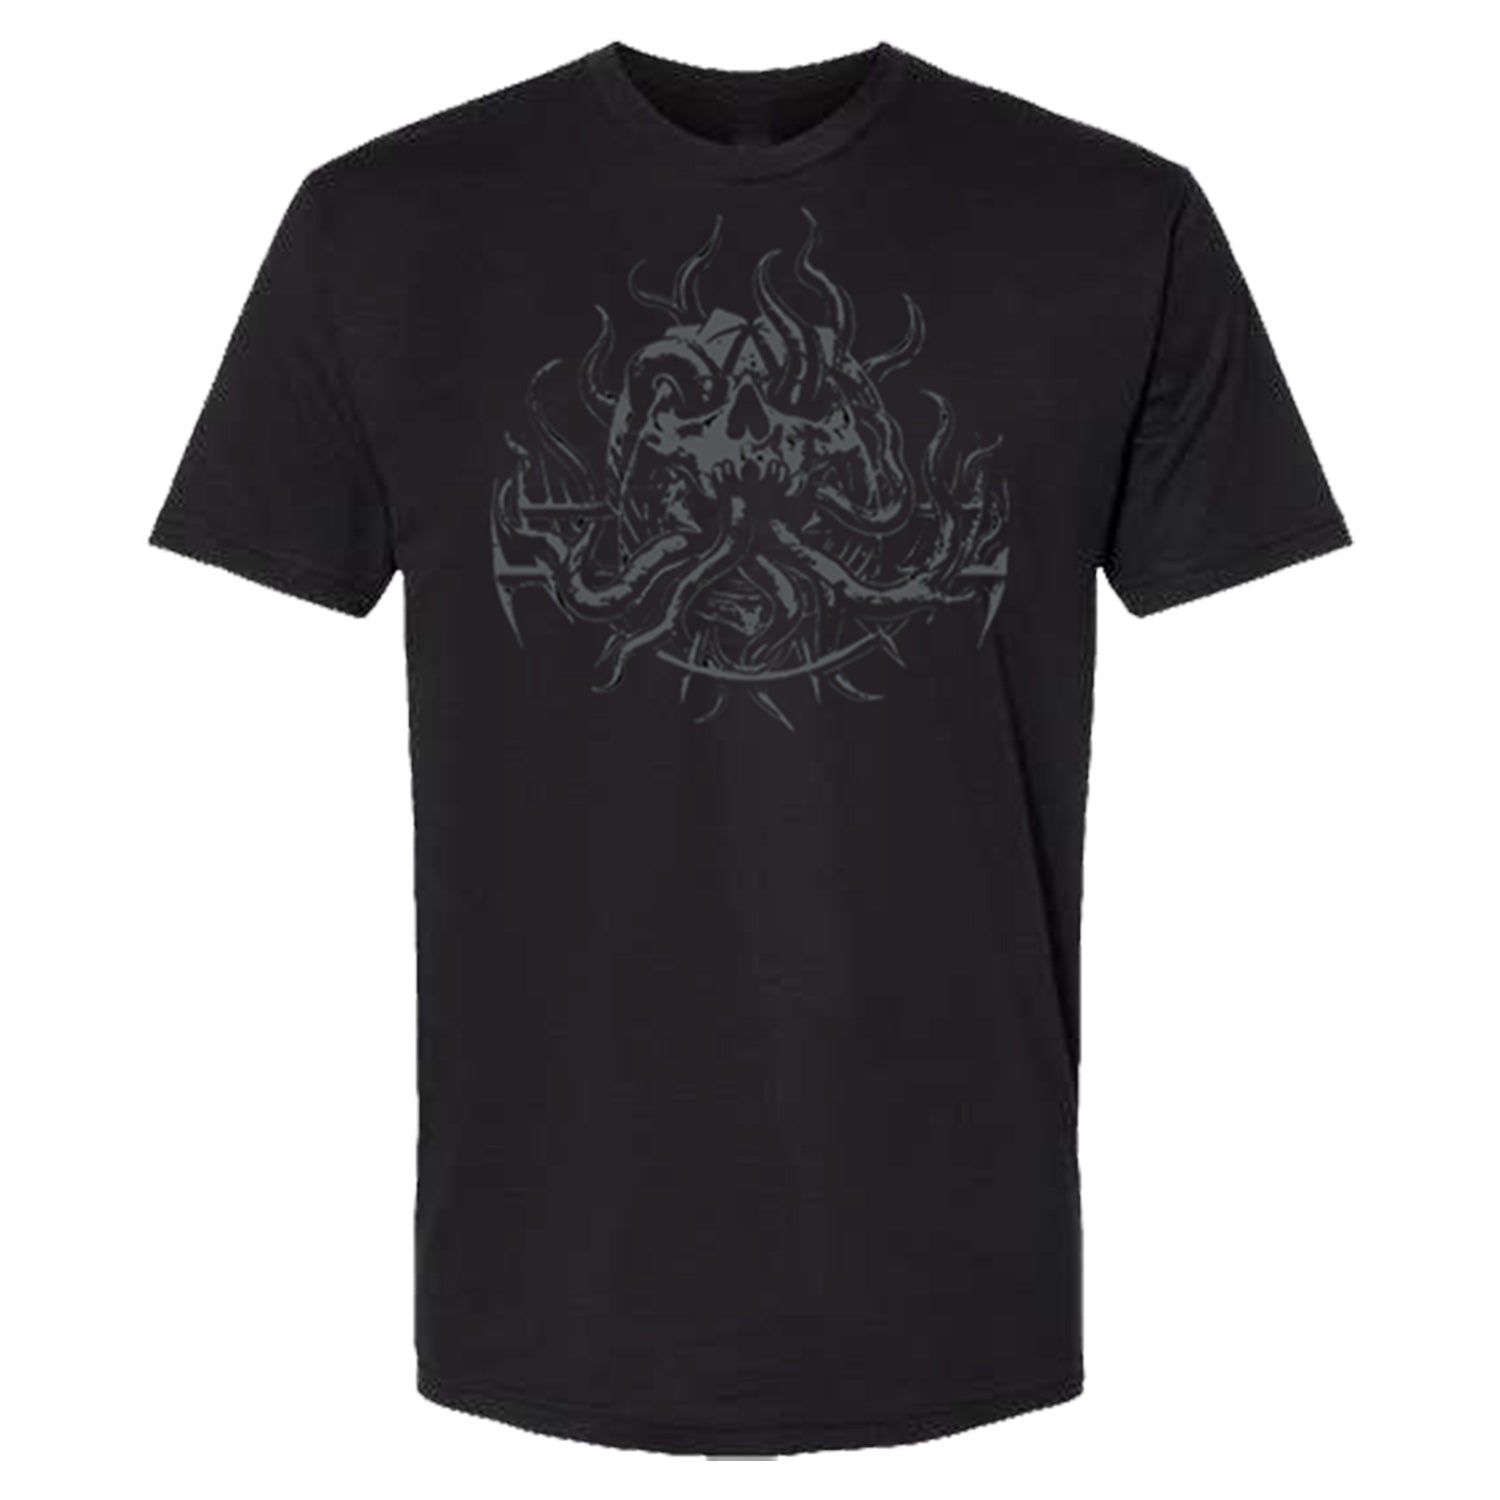 Diablo IV Season 1 Black T-Shirt - Front View